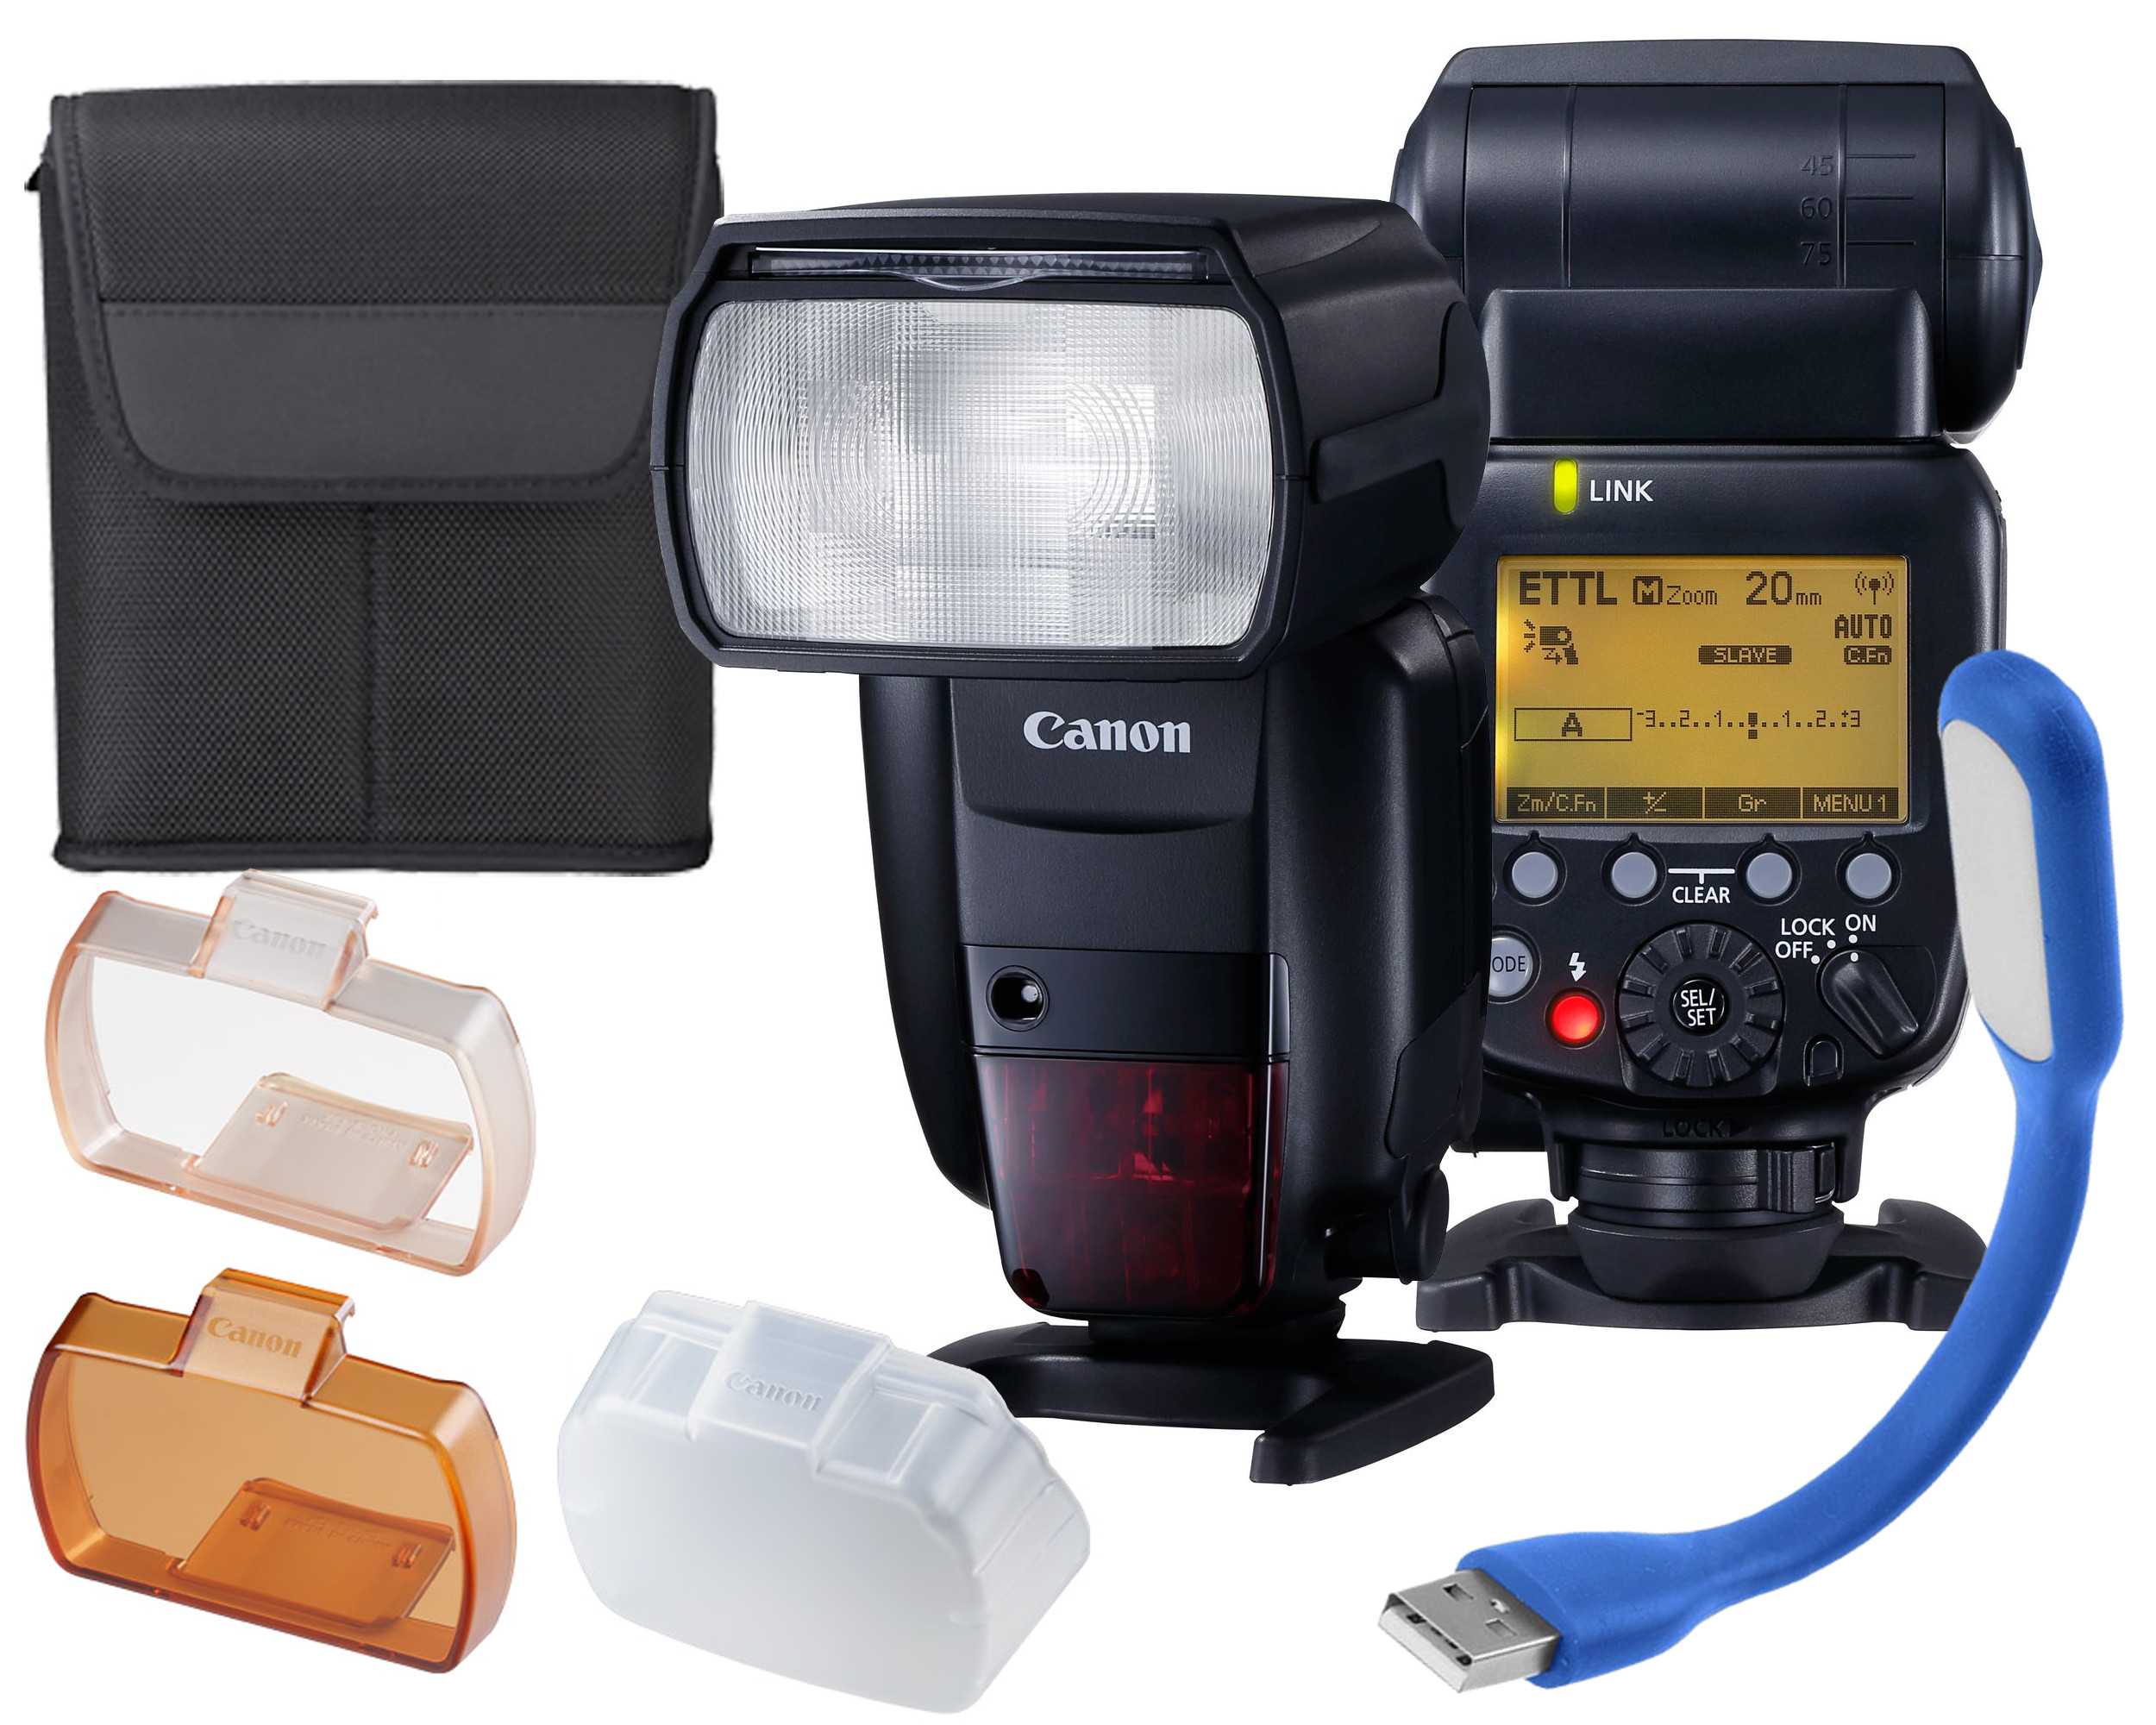 Canon speedlite 600ex купить по акционной цене , отзывы и обзоры.